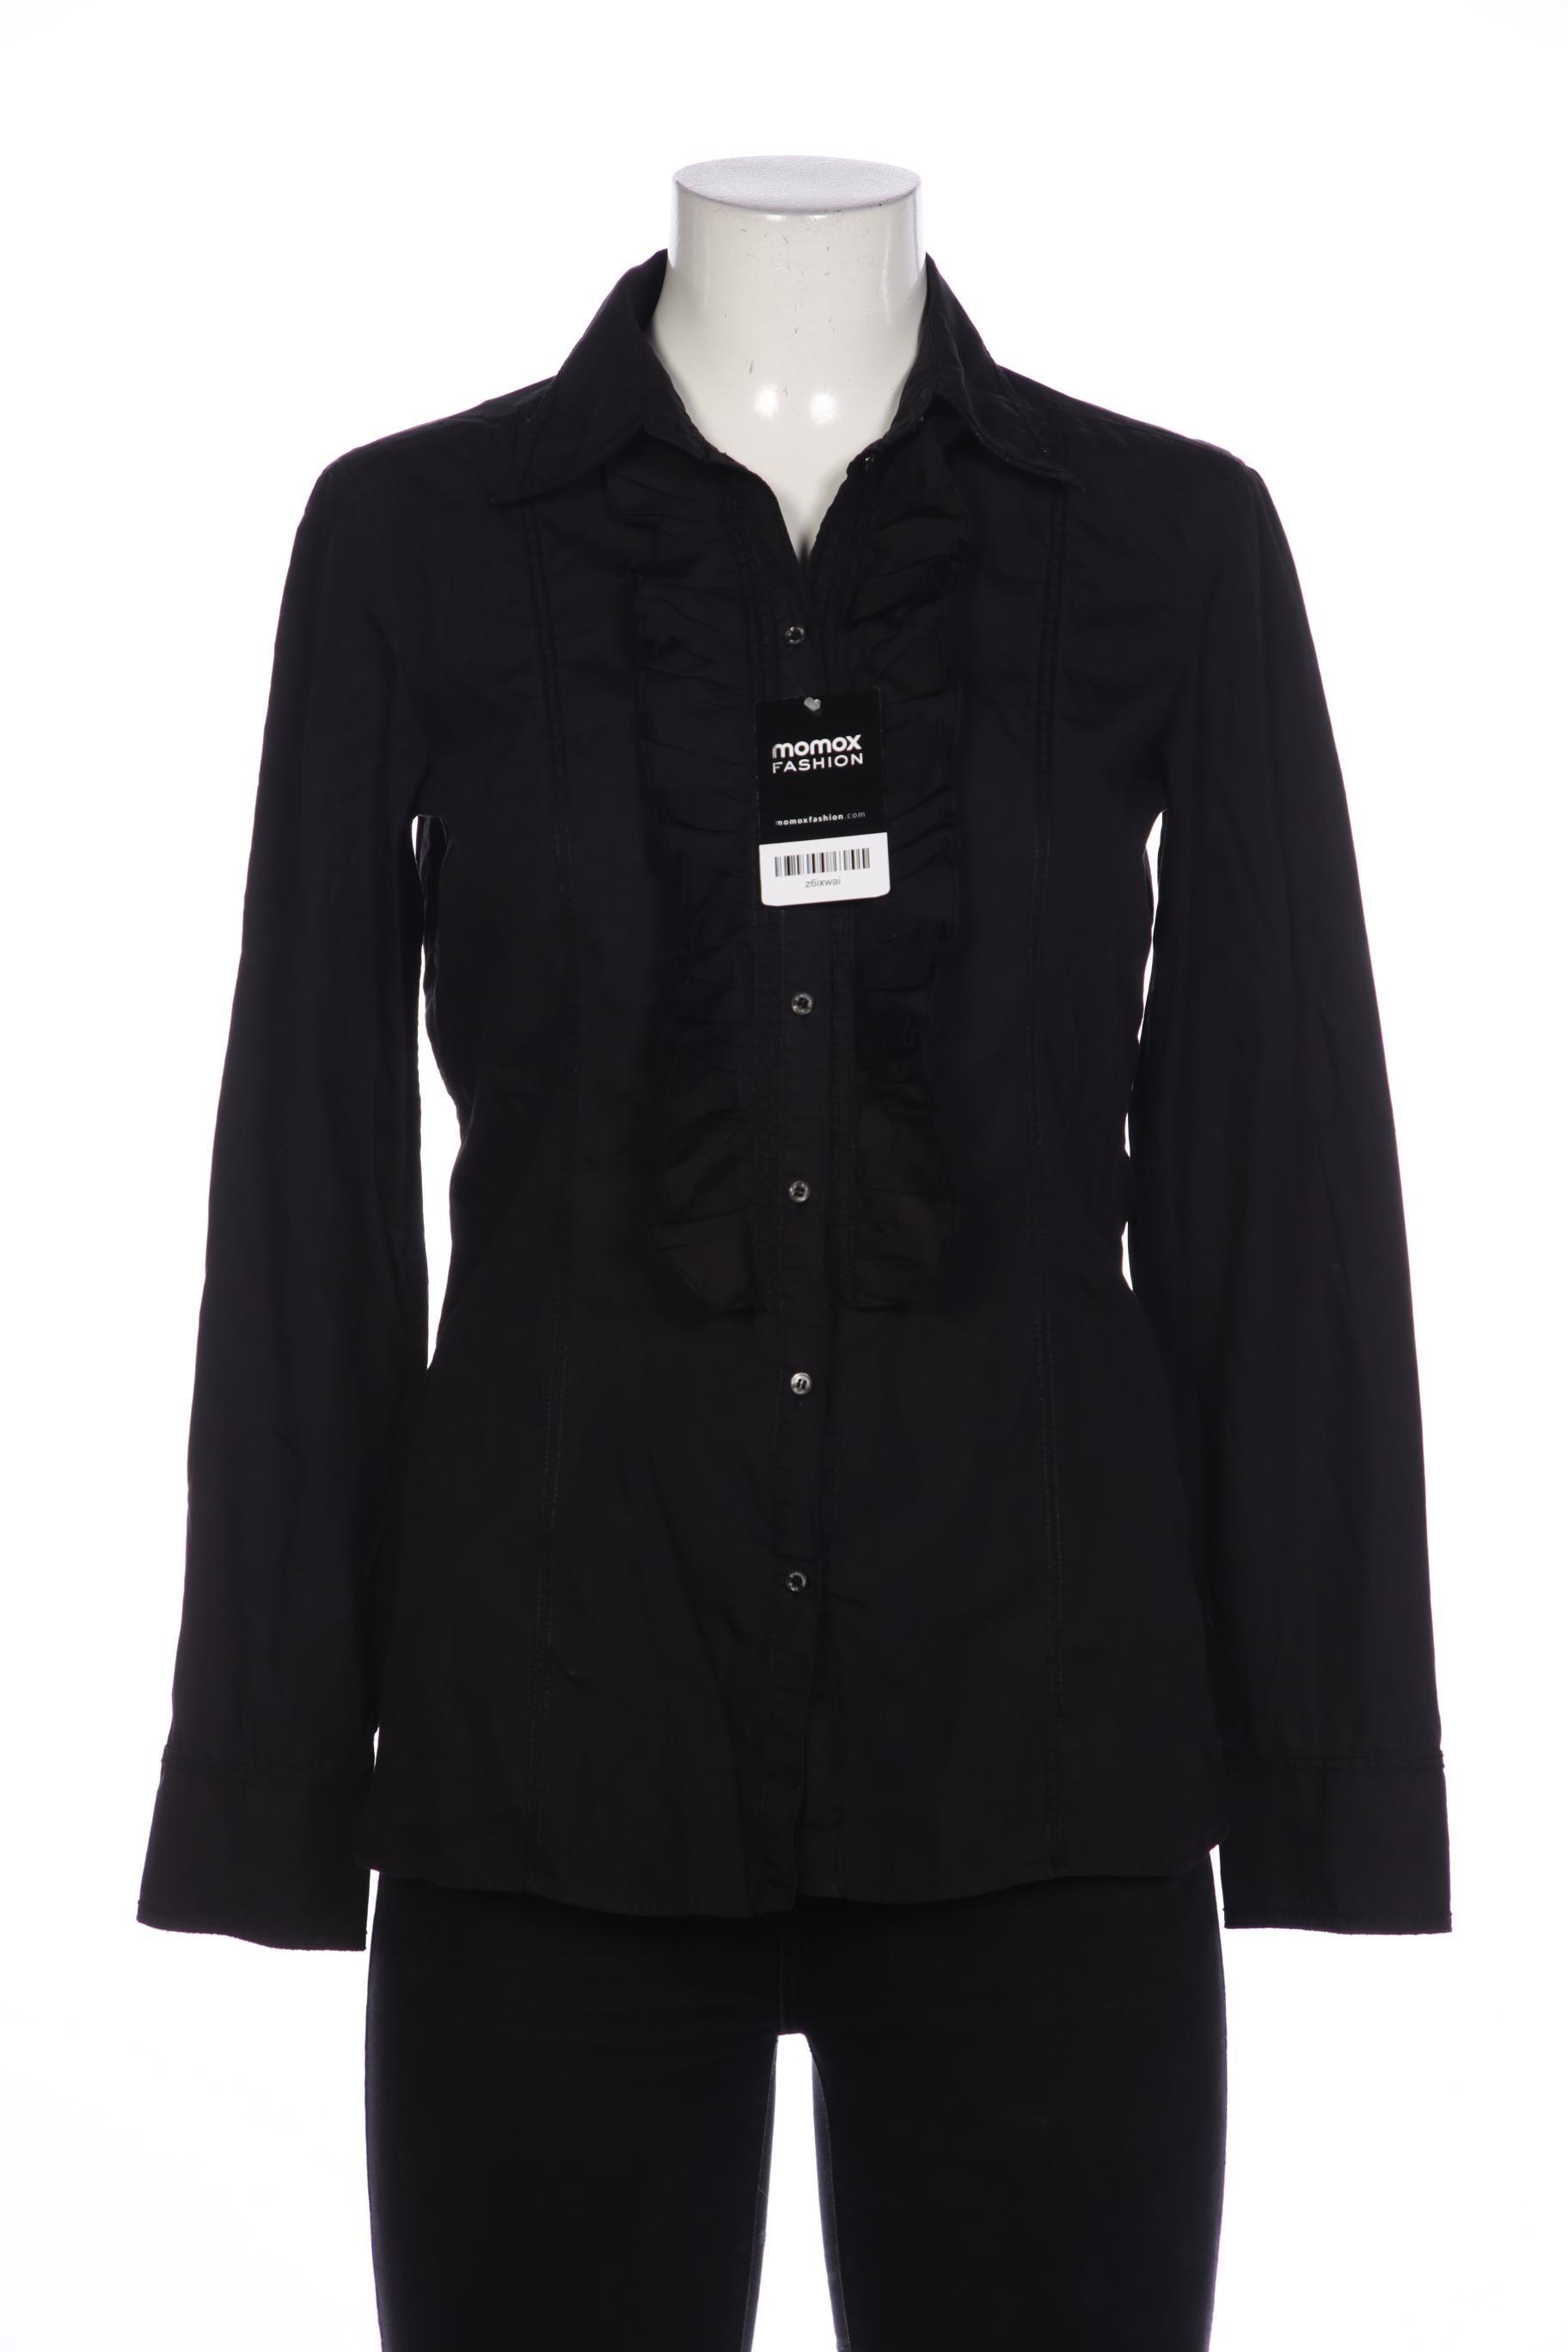 Strenesse Damen Bluse, schwarz, Gr. 38 von Strenesse